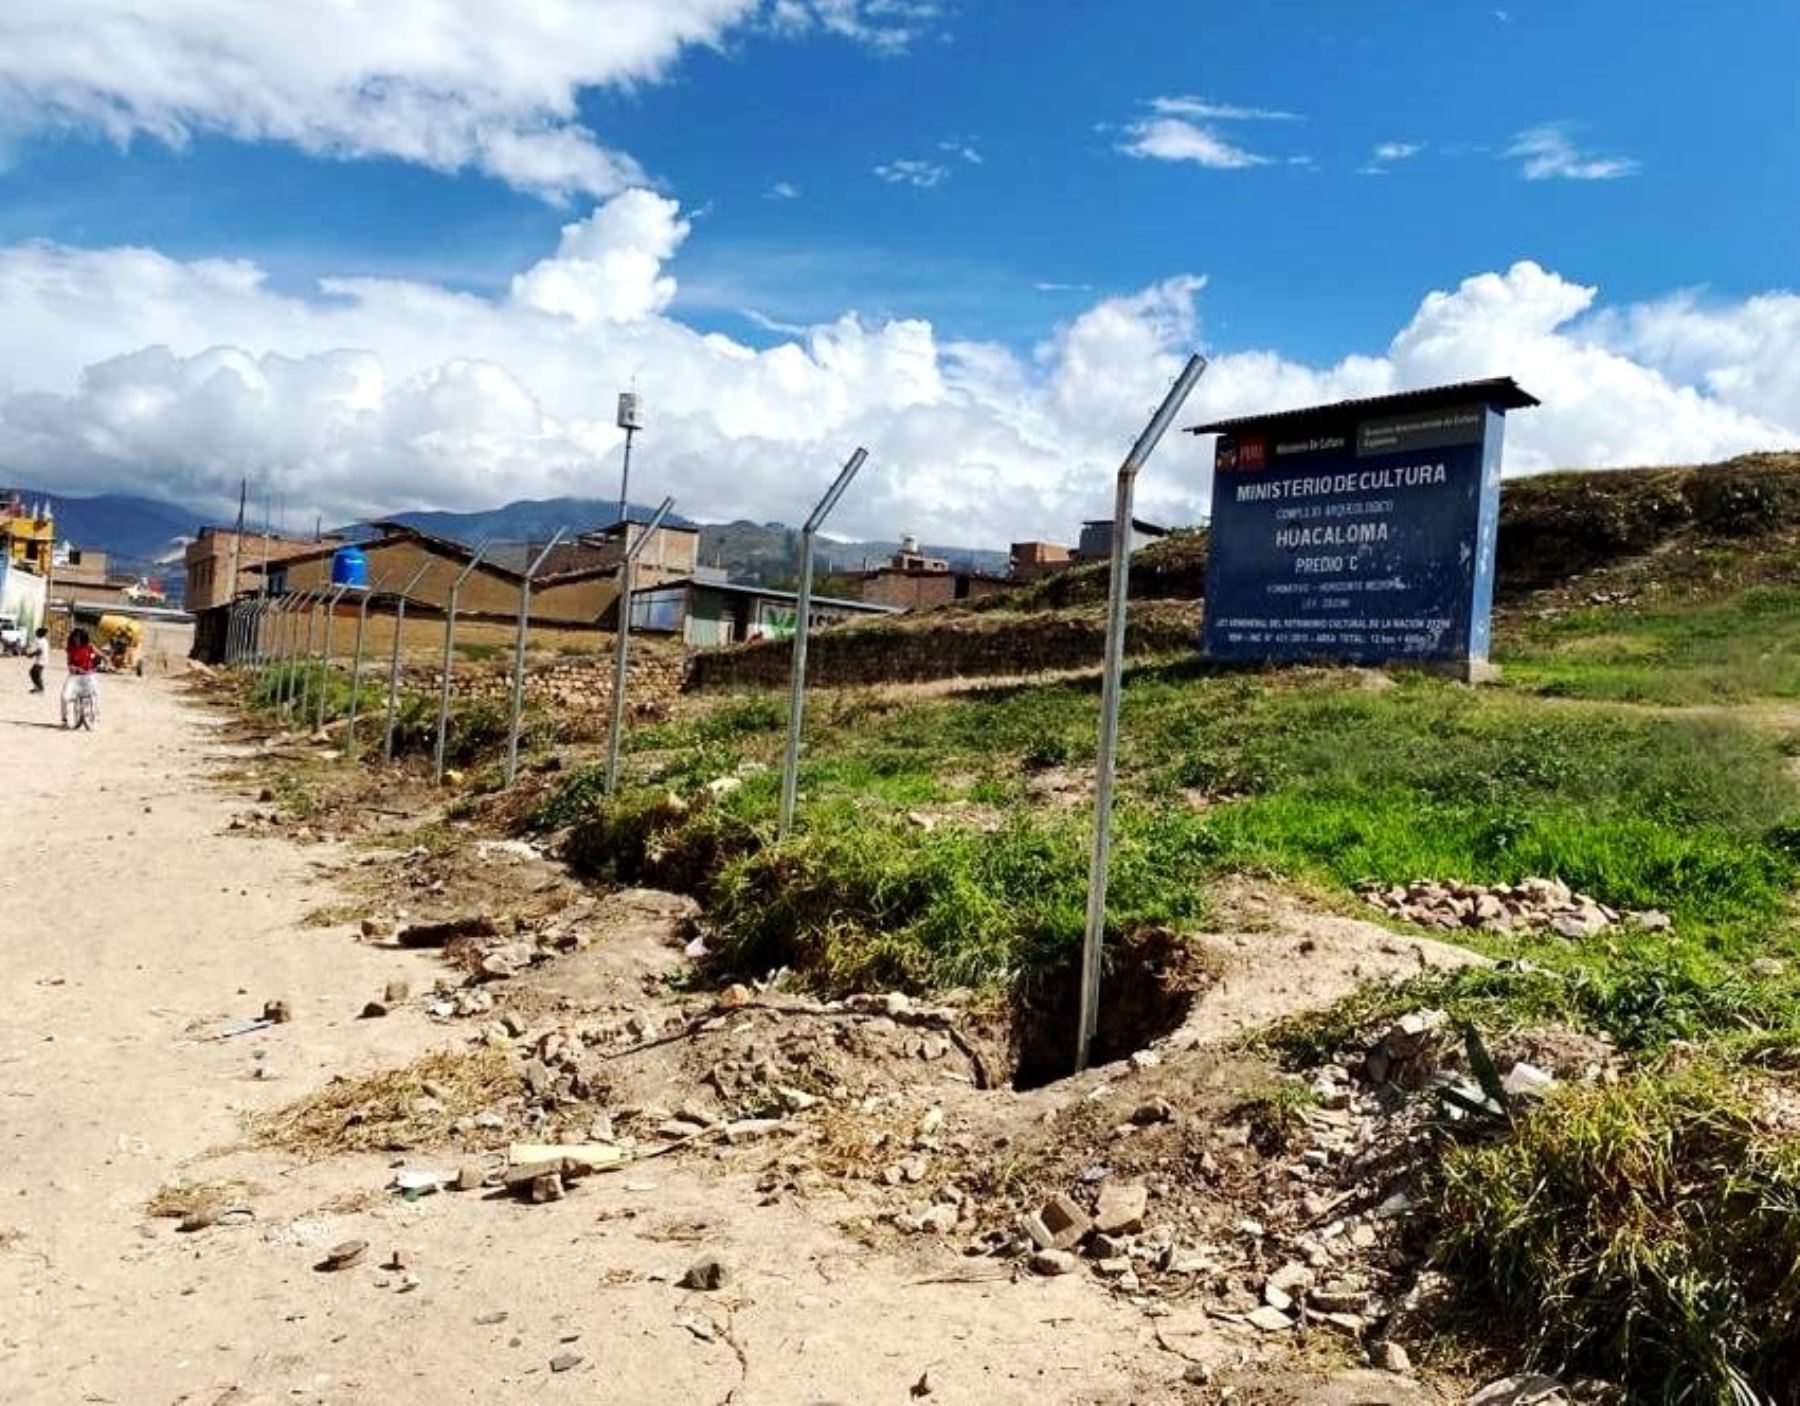 Autoridades de Cajamarca instalan cerco metálico para proteger el monumento arqueológico Huacaloma que es afectado por inescrupulosos que invaden esa zona. ANDINA/Difusión